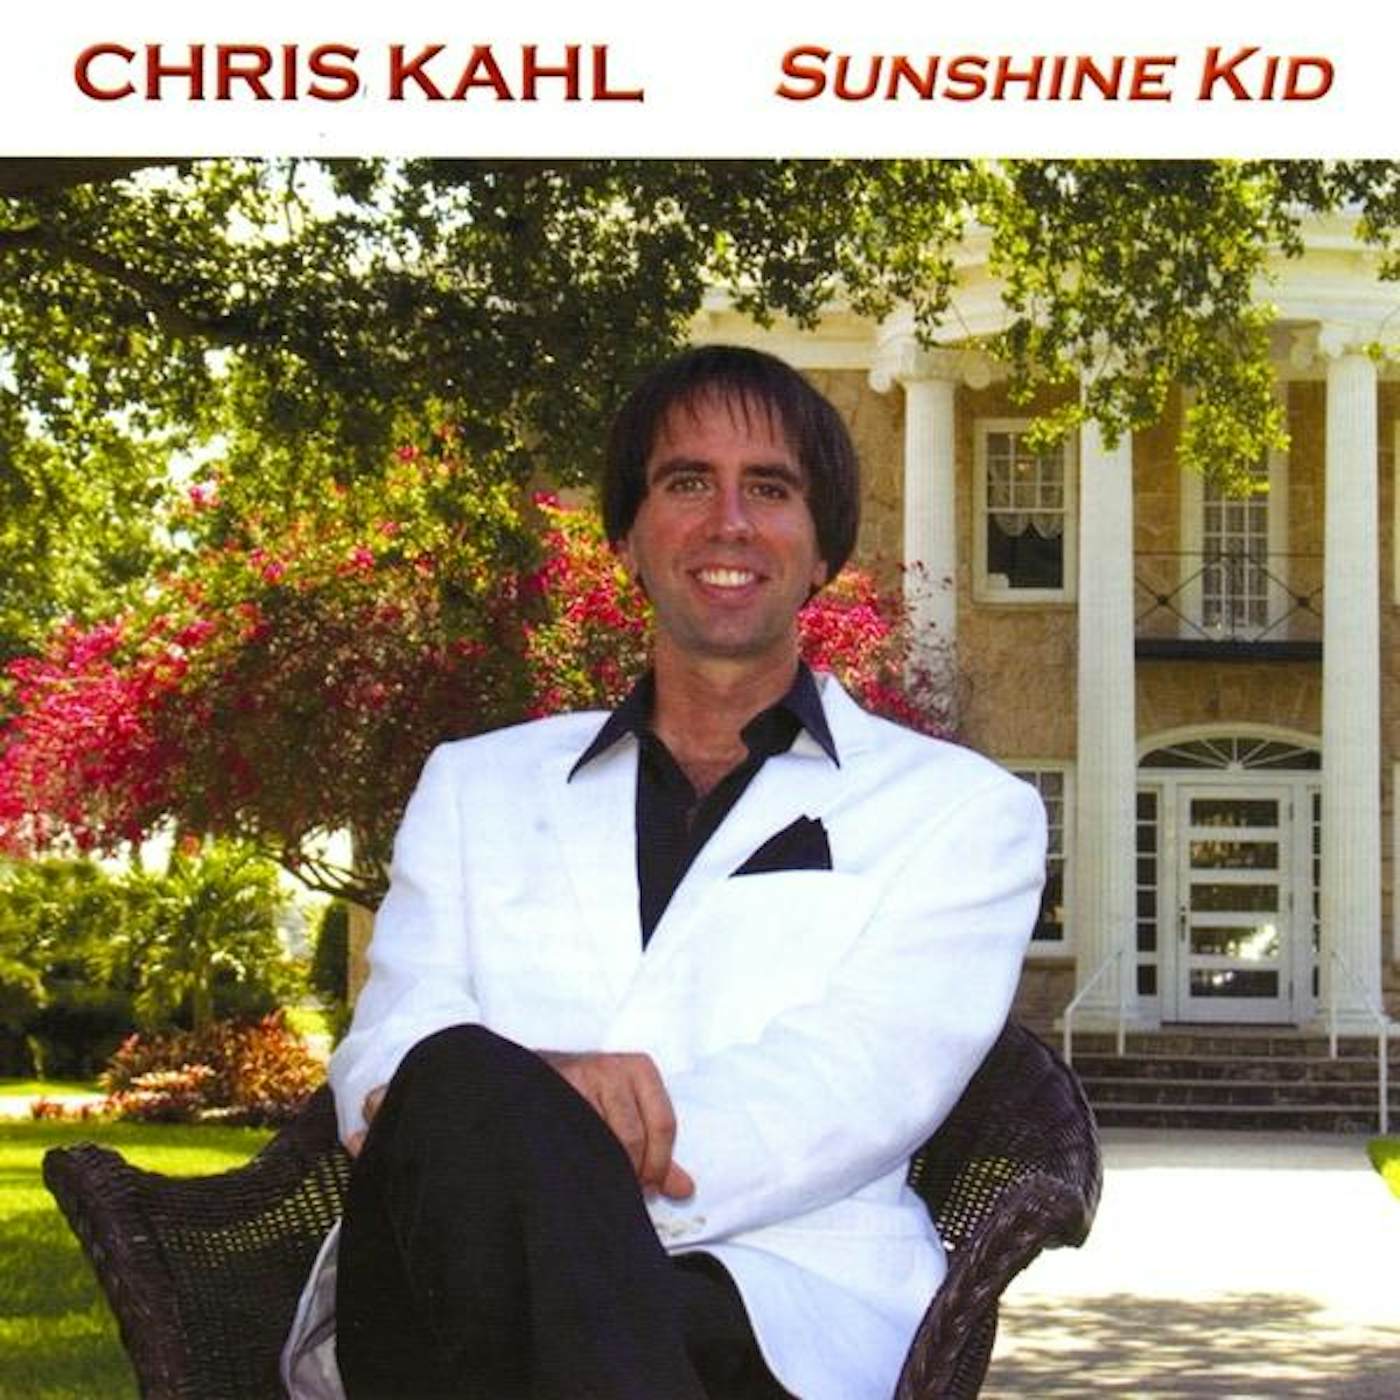 Chris Kahl SUNSHINE KID CD